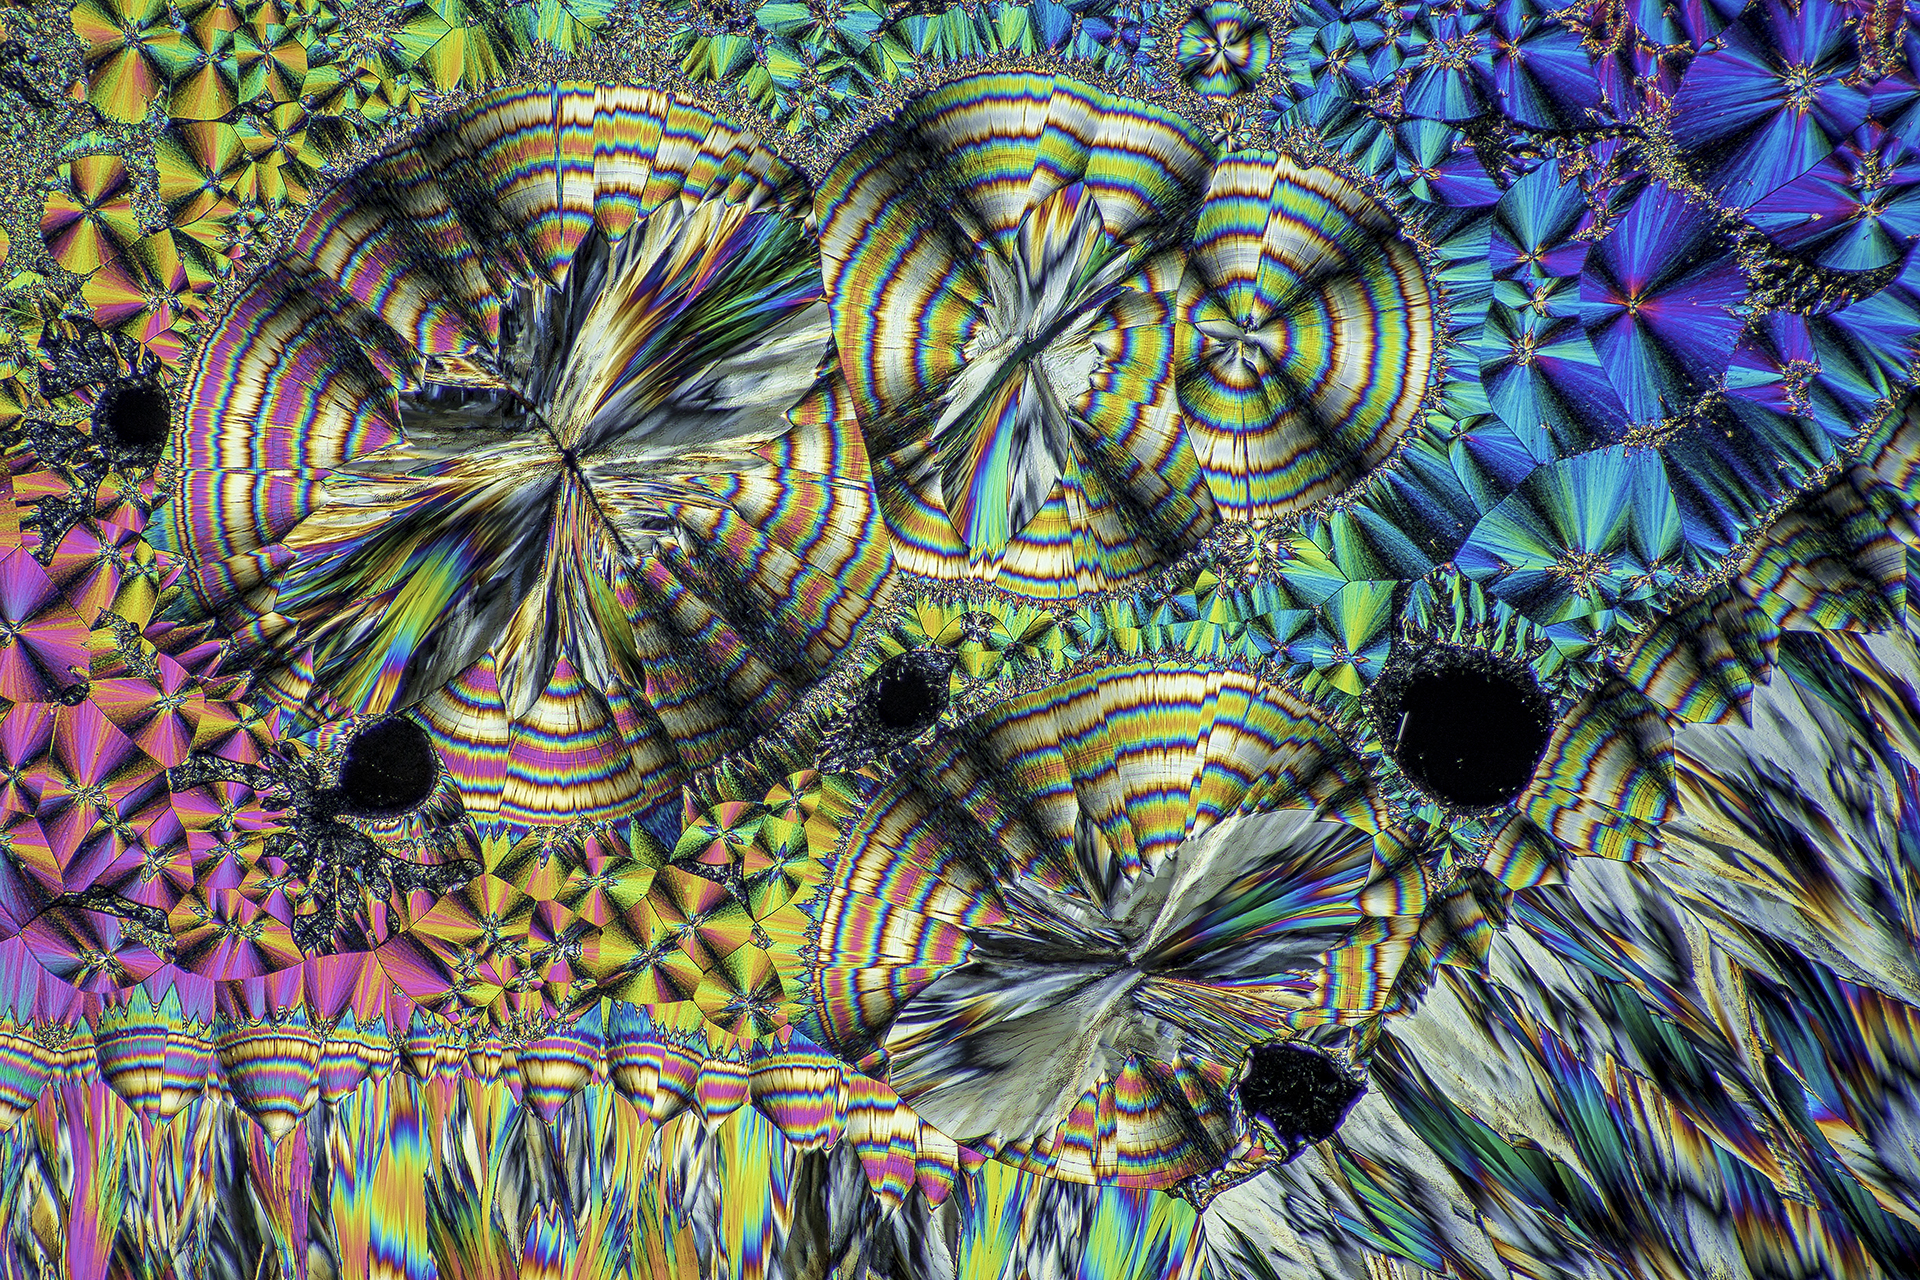 Hippursäure in einer Vergrößerung von 120:1, Mikro Kristall im polarisierten Licht.